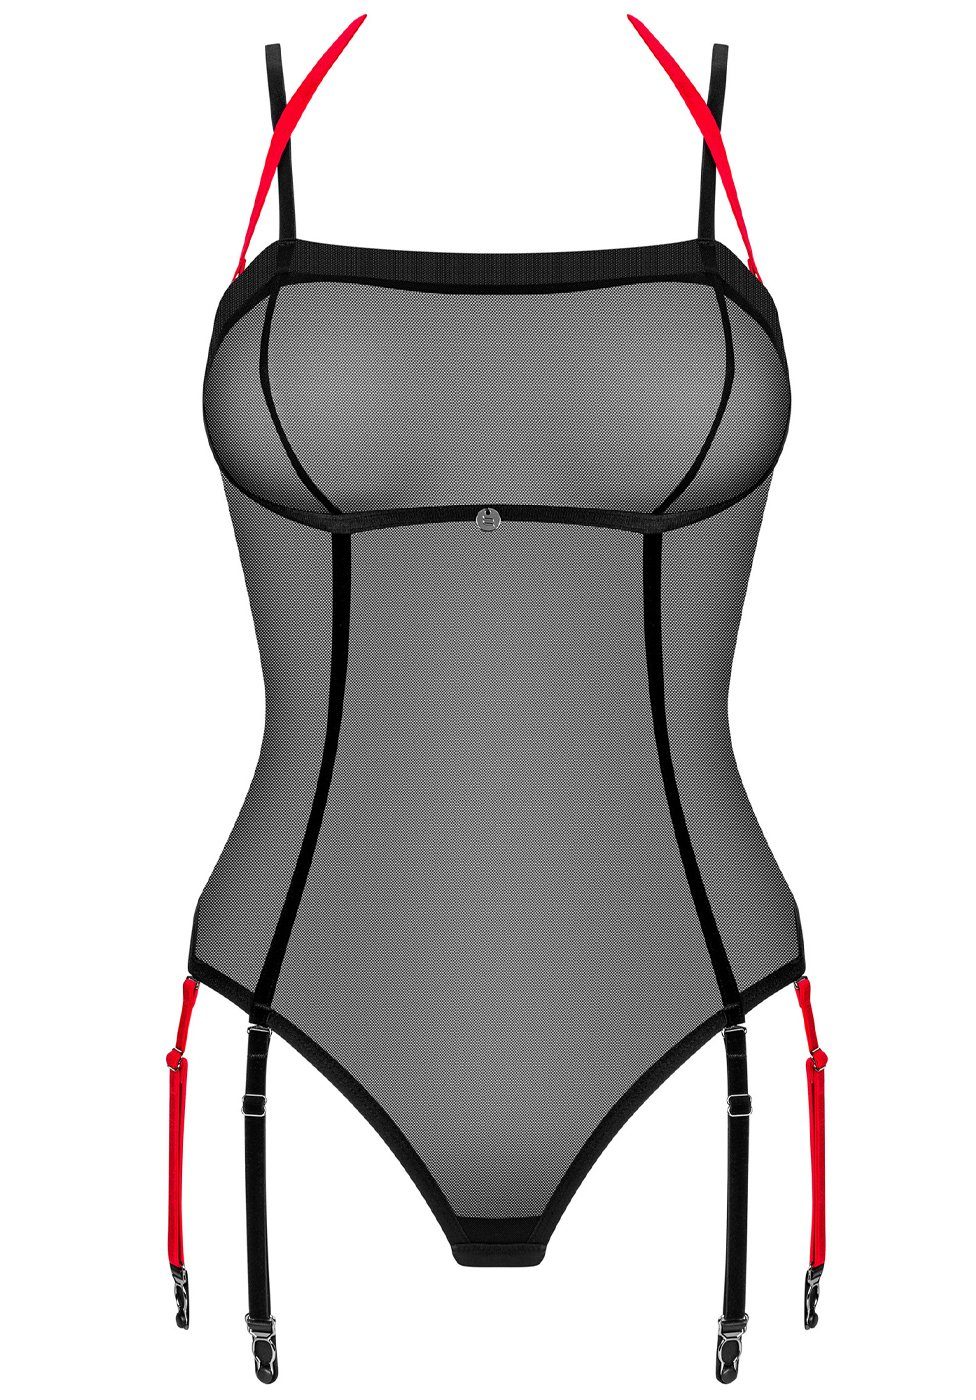 Obsessive Body Transparenter Strumpfhaltern - Body schwarz, rot mit